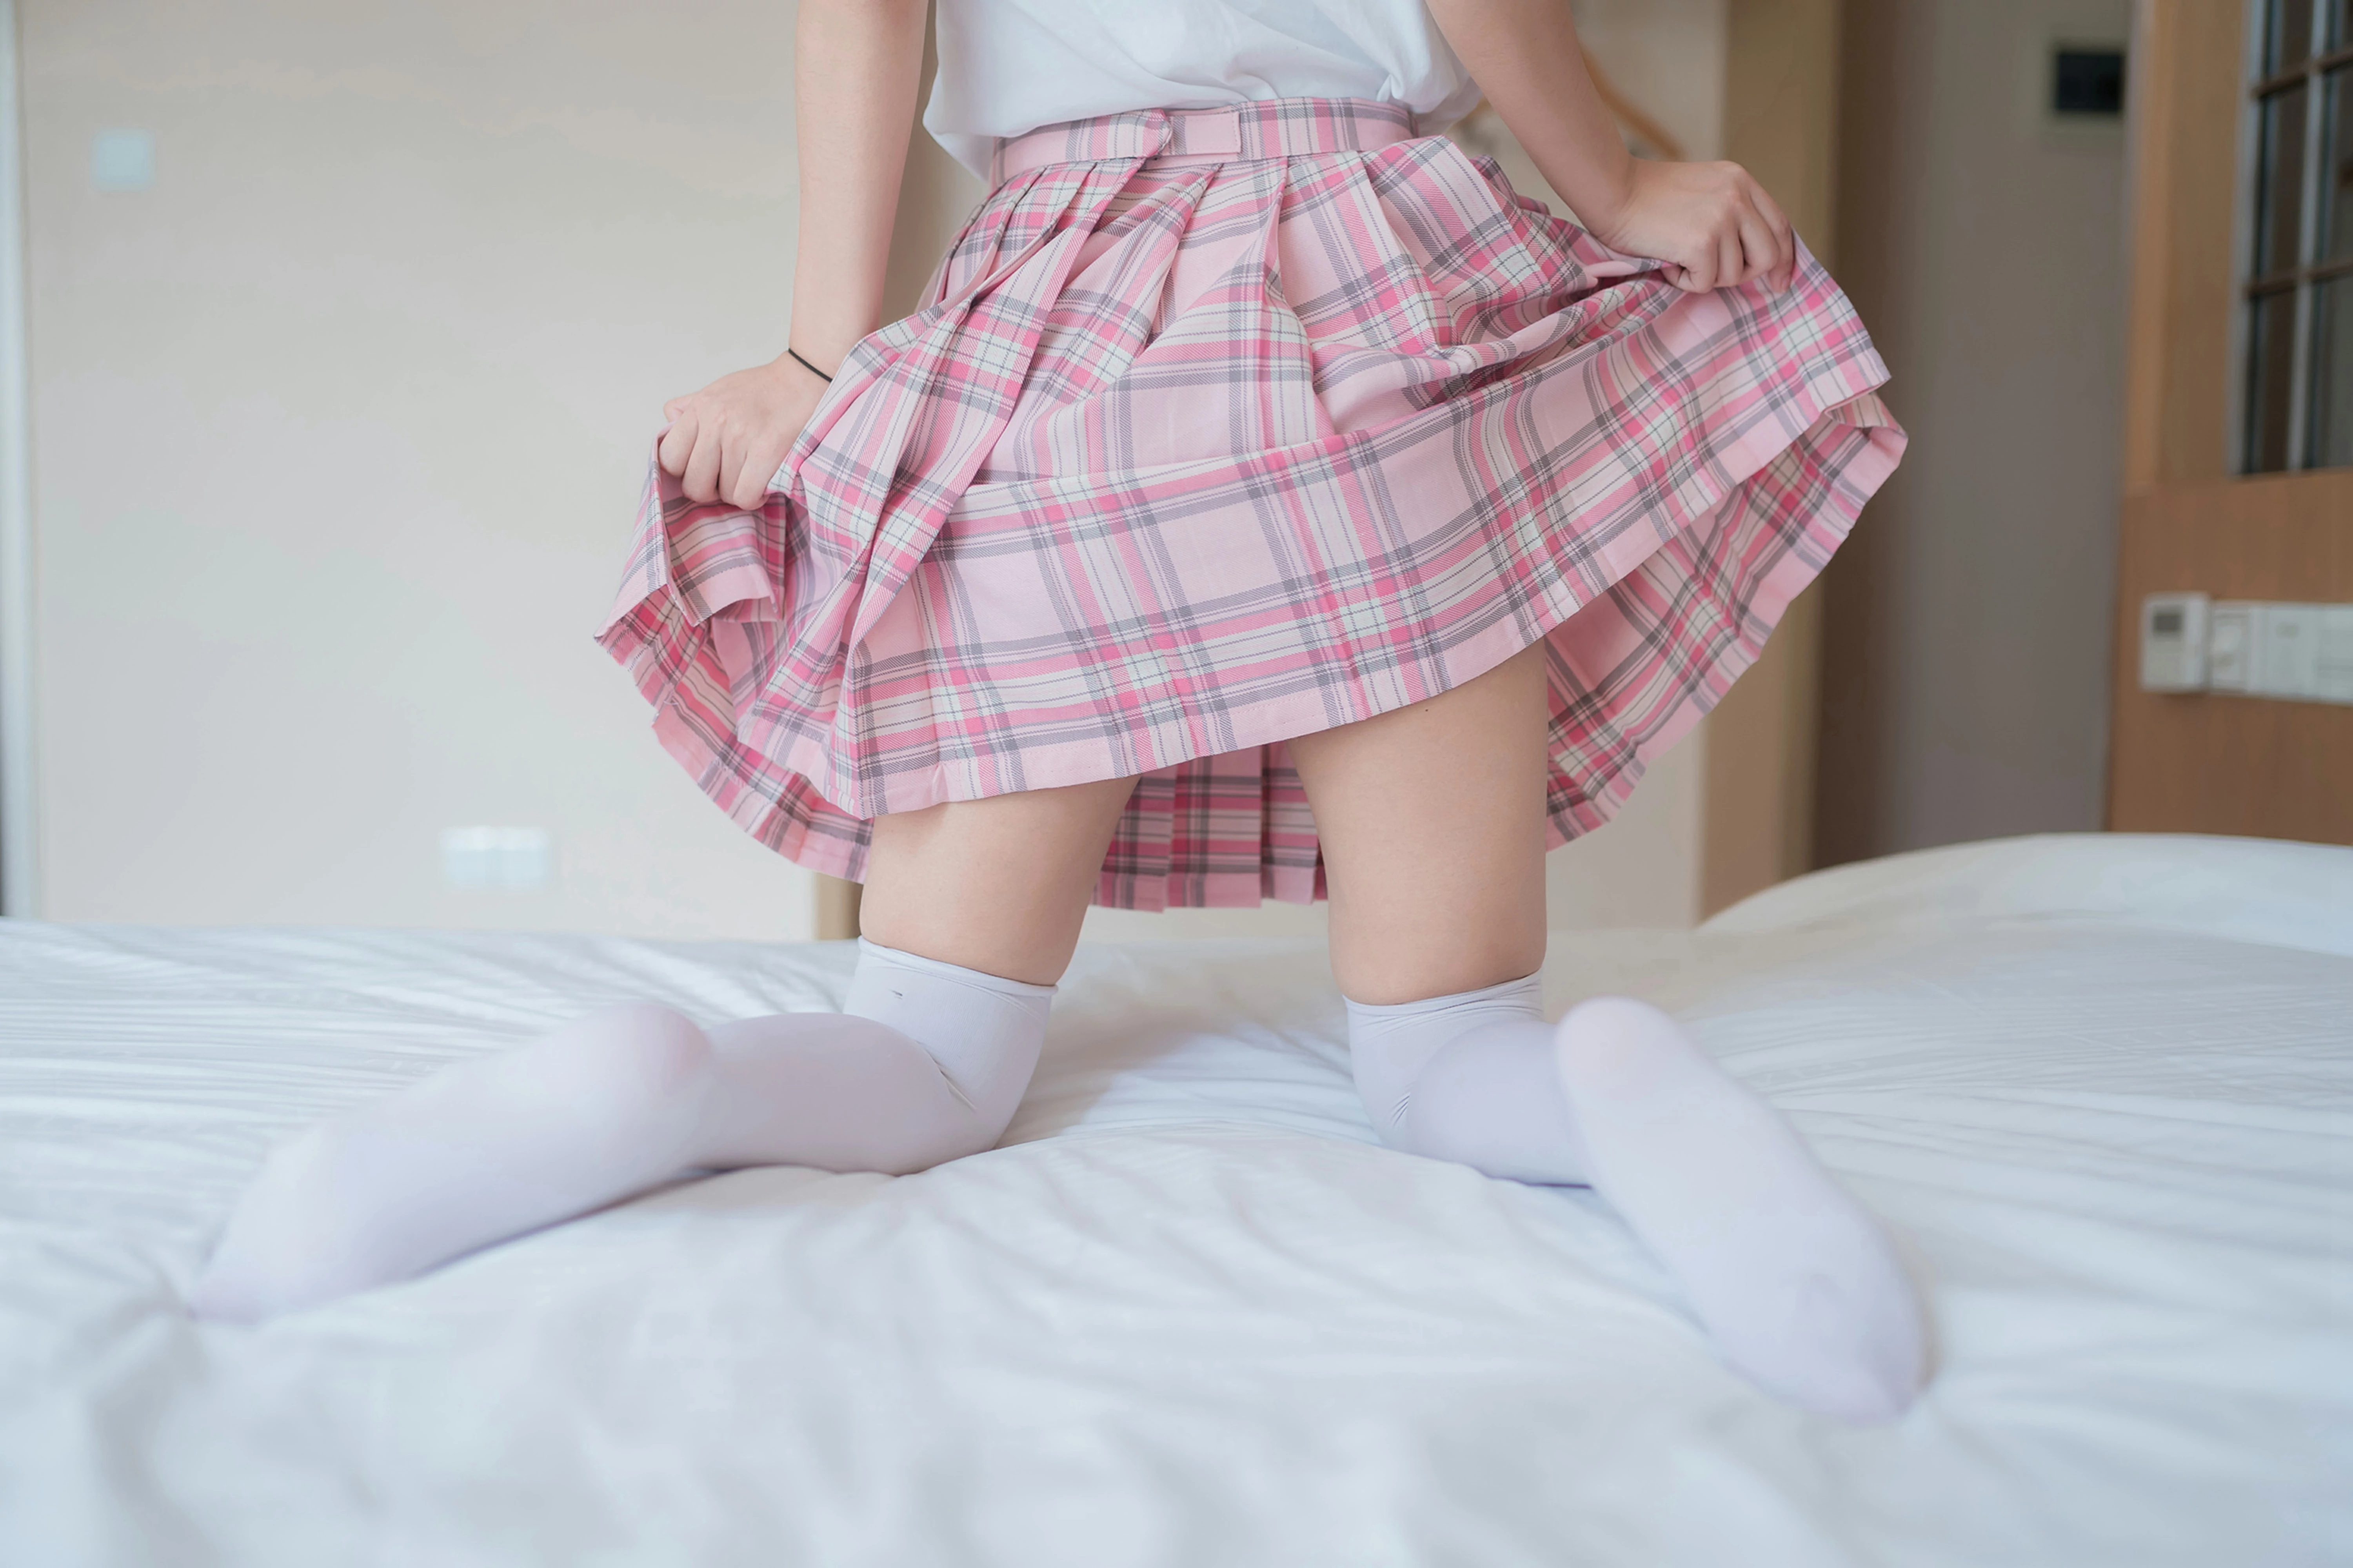 [风之领域]NO.066 清纯可爱小萝莉 白色短袖与粉色短裙加白色丝袜美腿私房写真集,